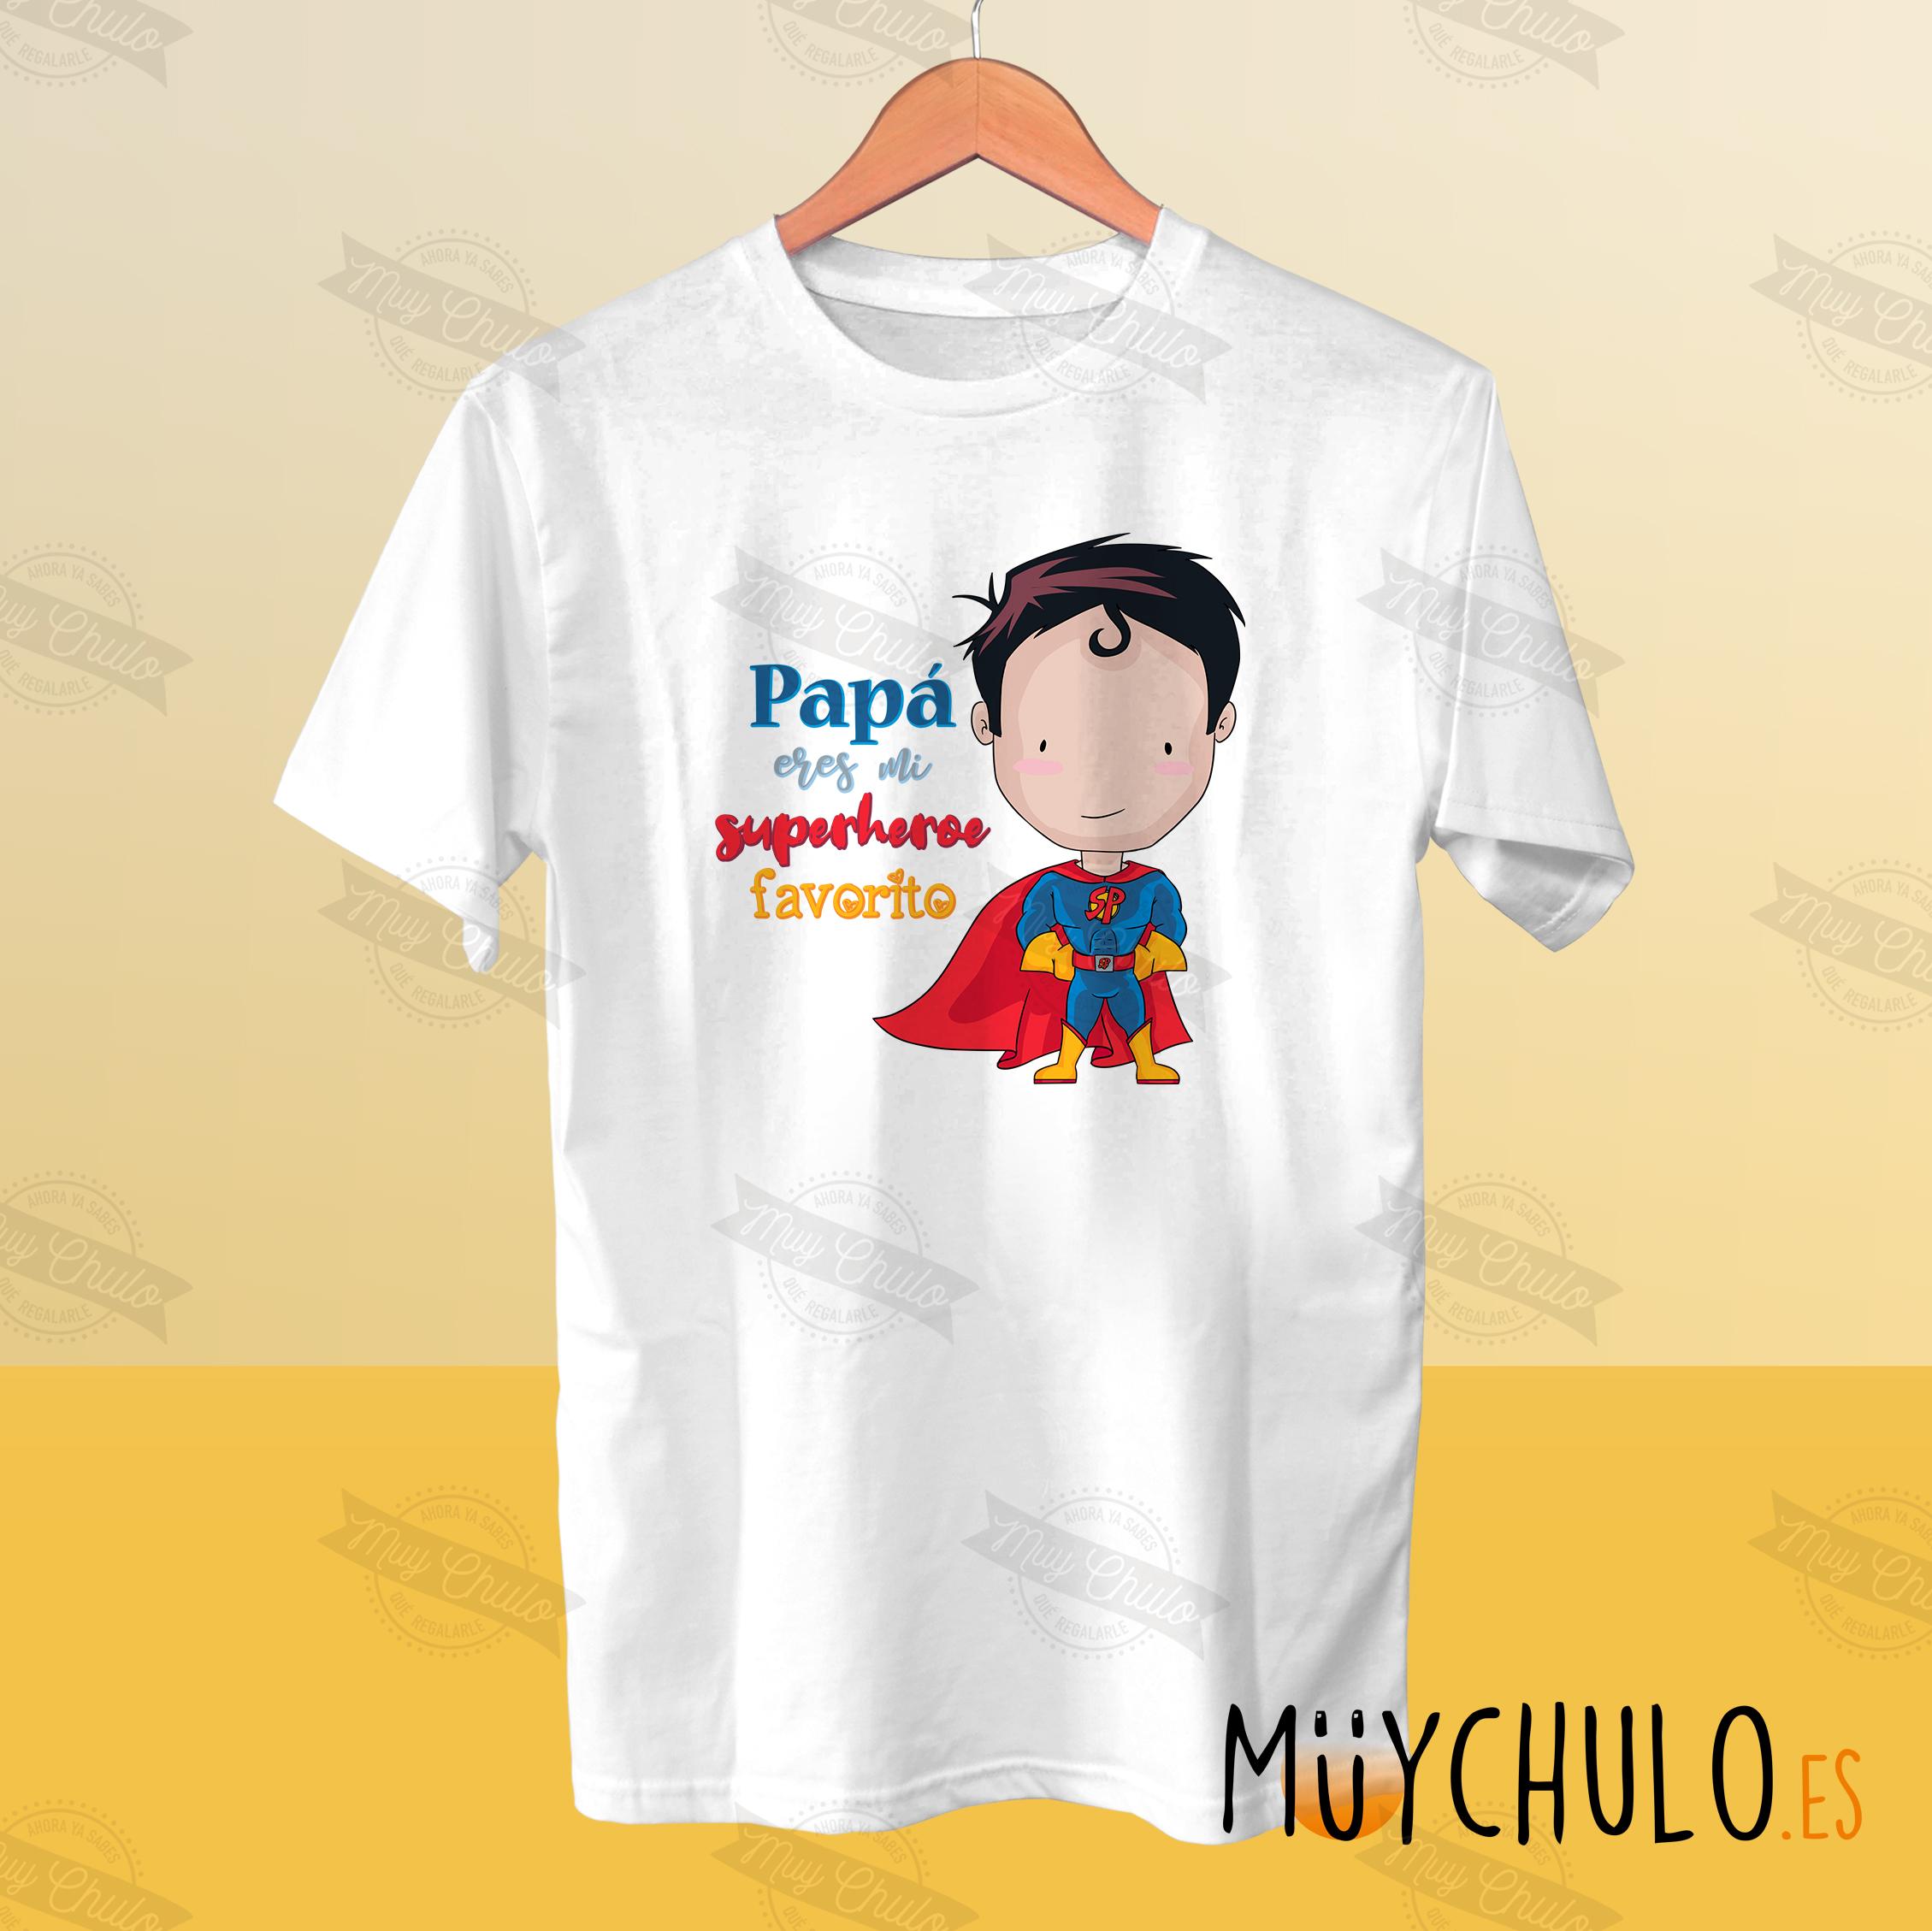 Resolver Sada Atrevimiento Camiseta Papá eres mi superhéroe favorito - MuyChulo DÍA DEL PADRE